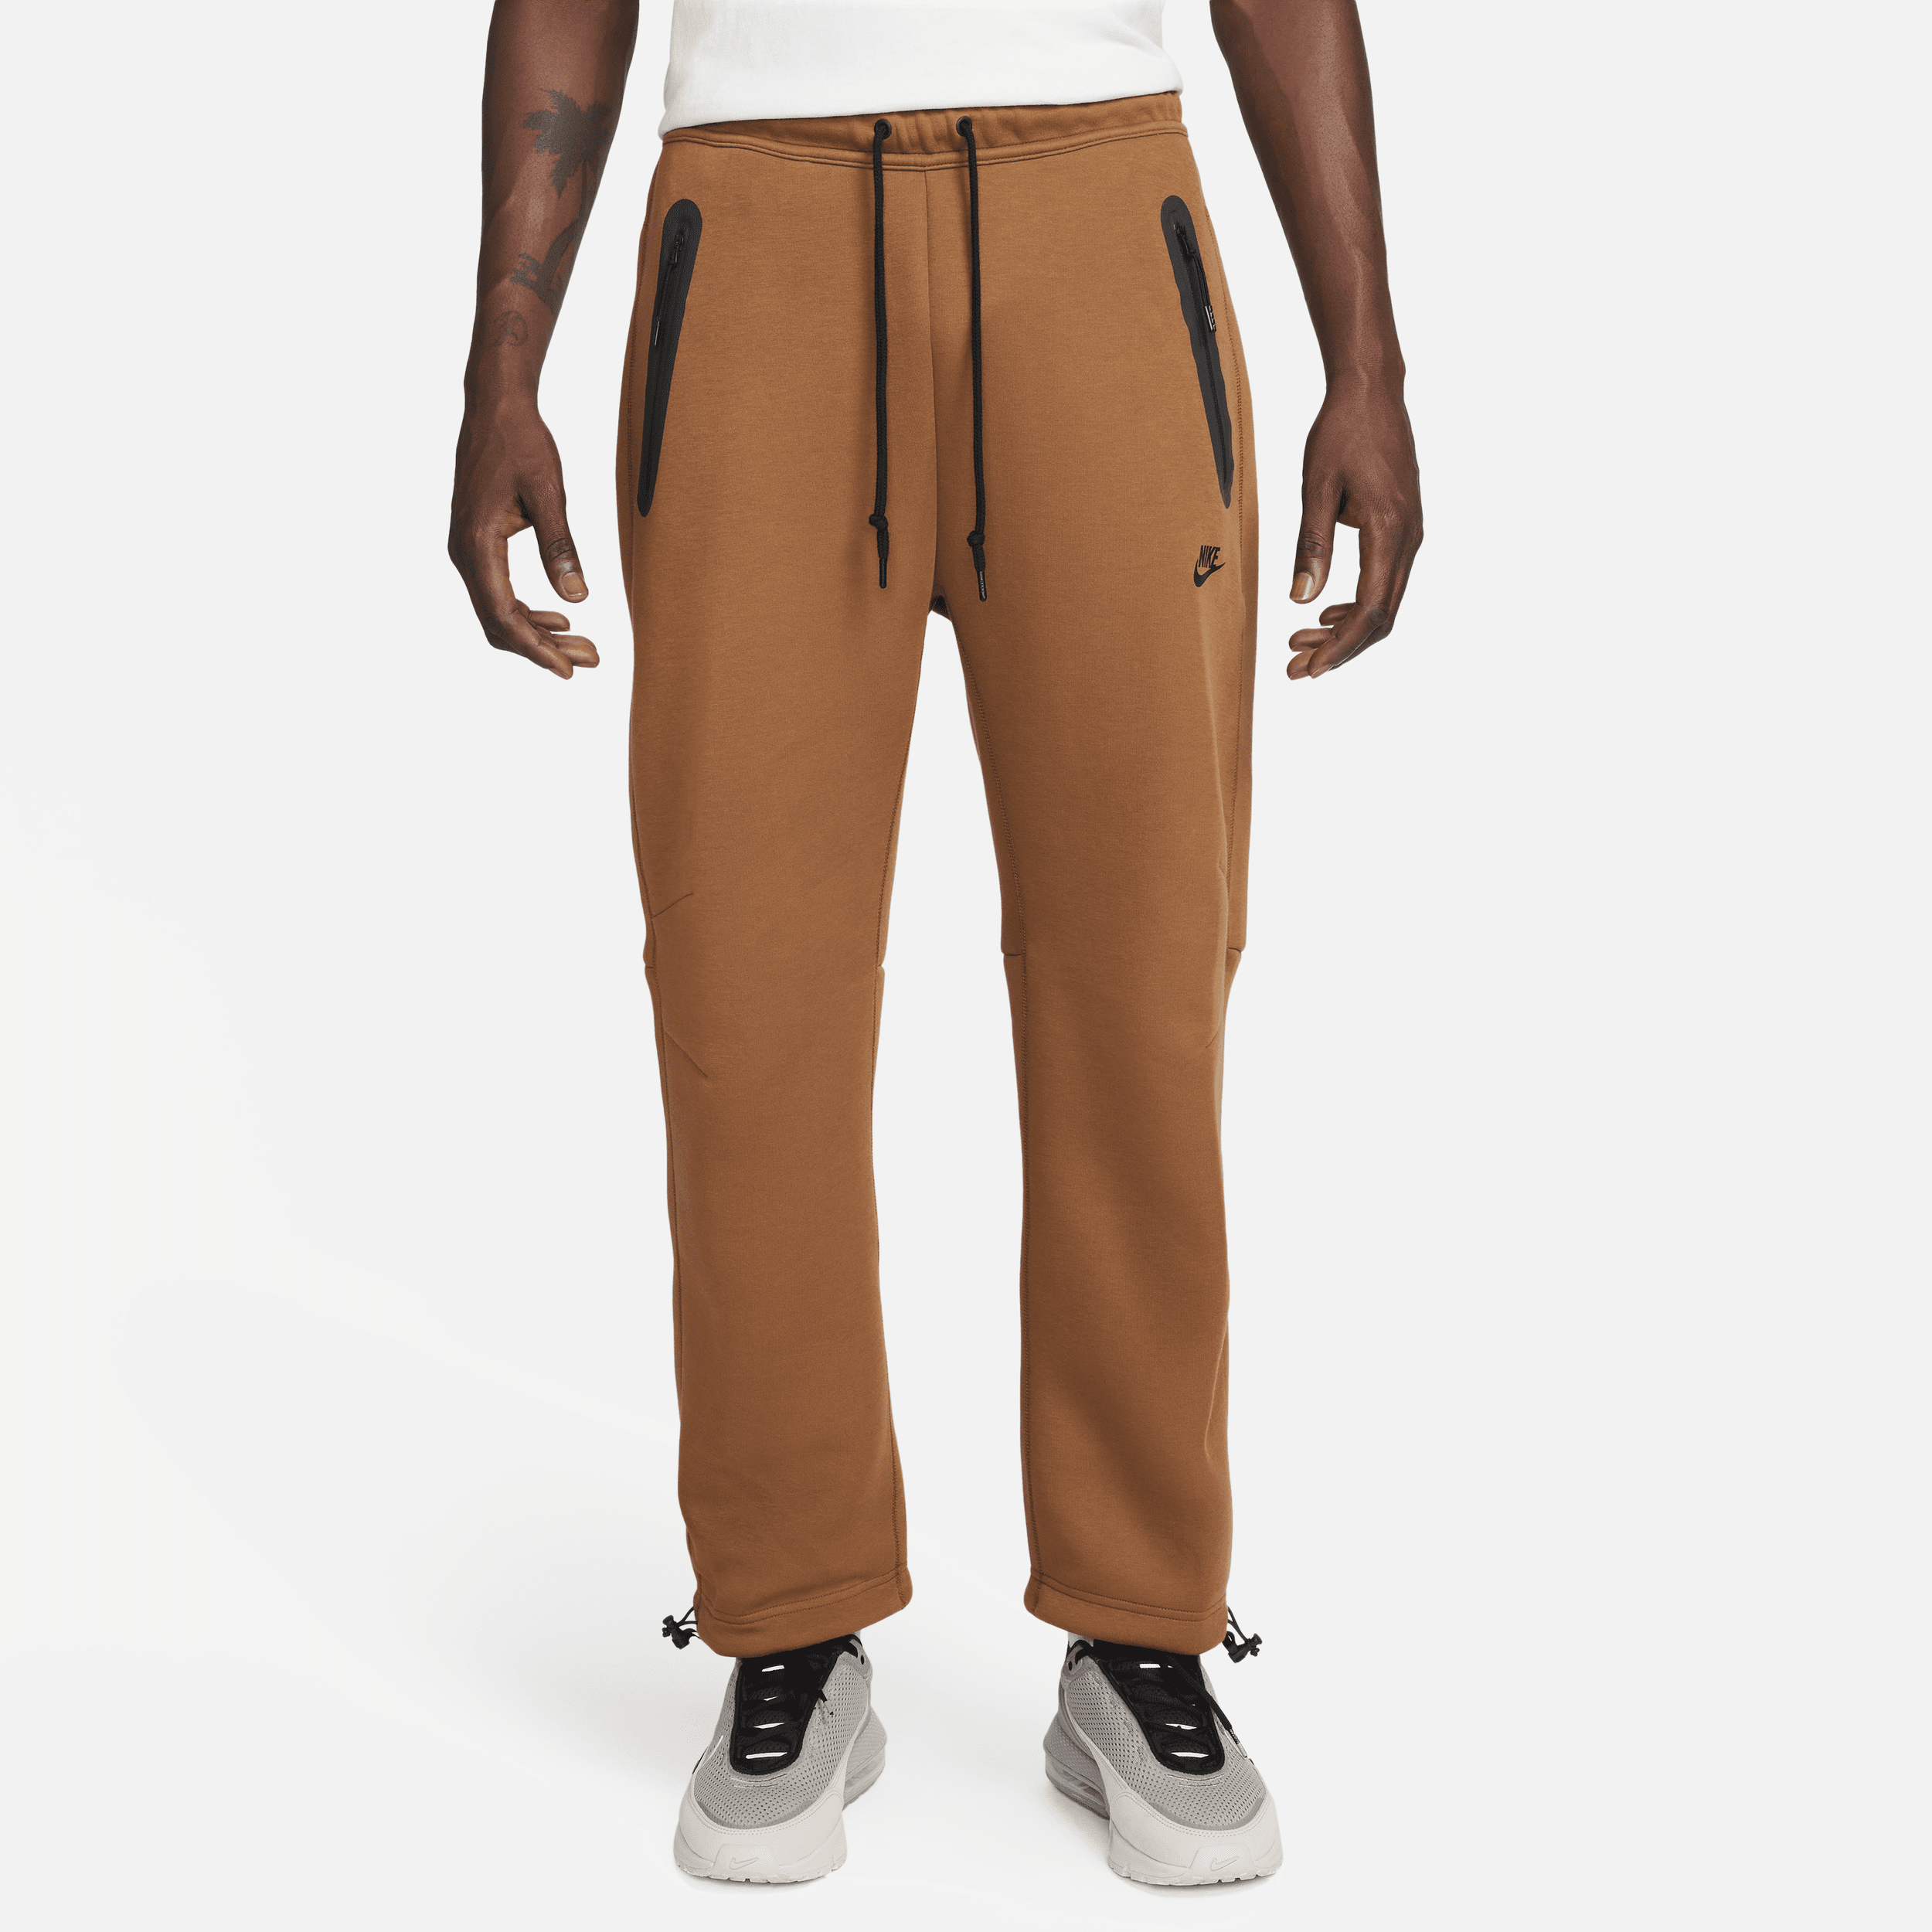 Pantaloni tuta con orlo aperto Nike Sportswear Tech Fleece – Uomo - Marrone